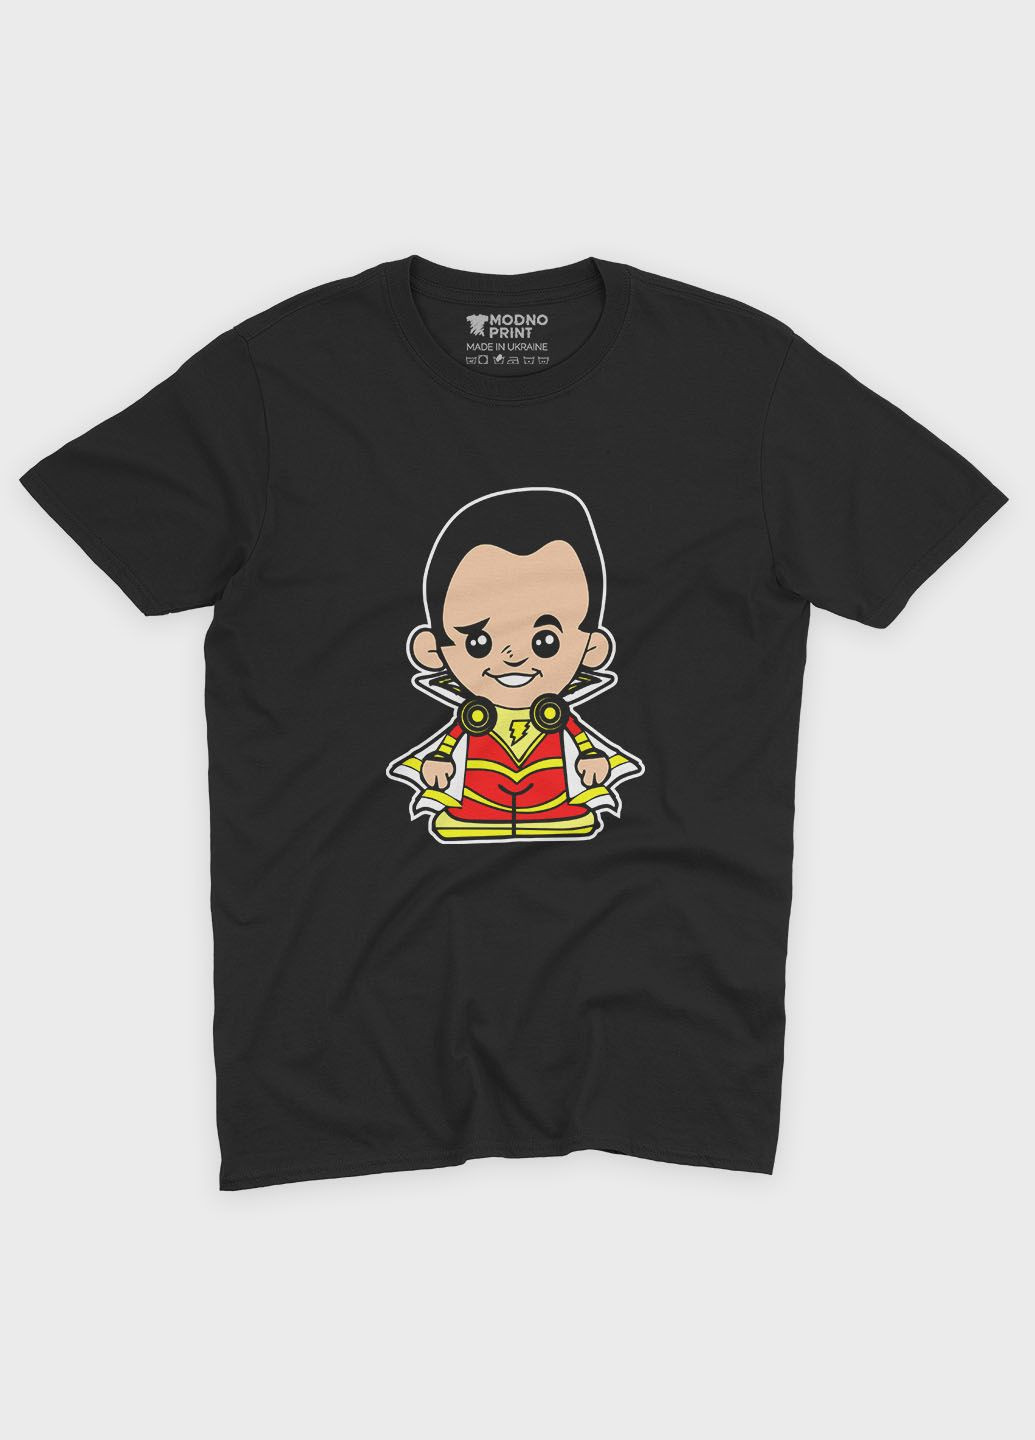 Черная демисезонная футболка для мальчика с принтом супергероя - шазам (ts001-1-bl-006-012-002-b) Modno